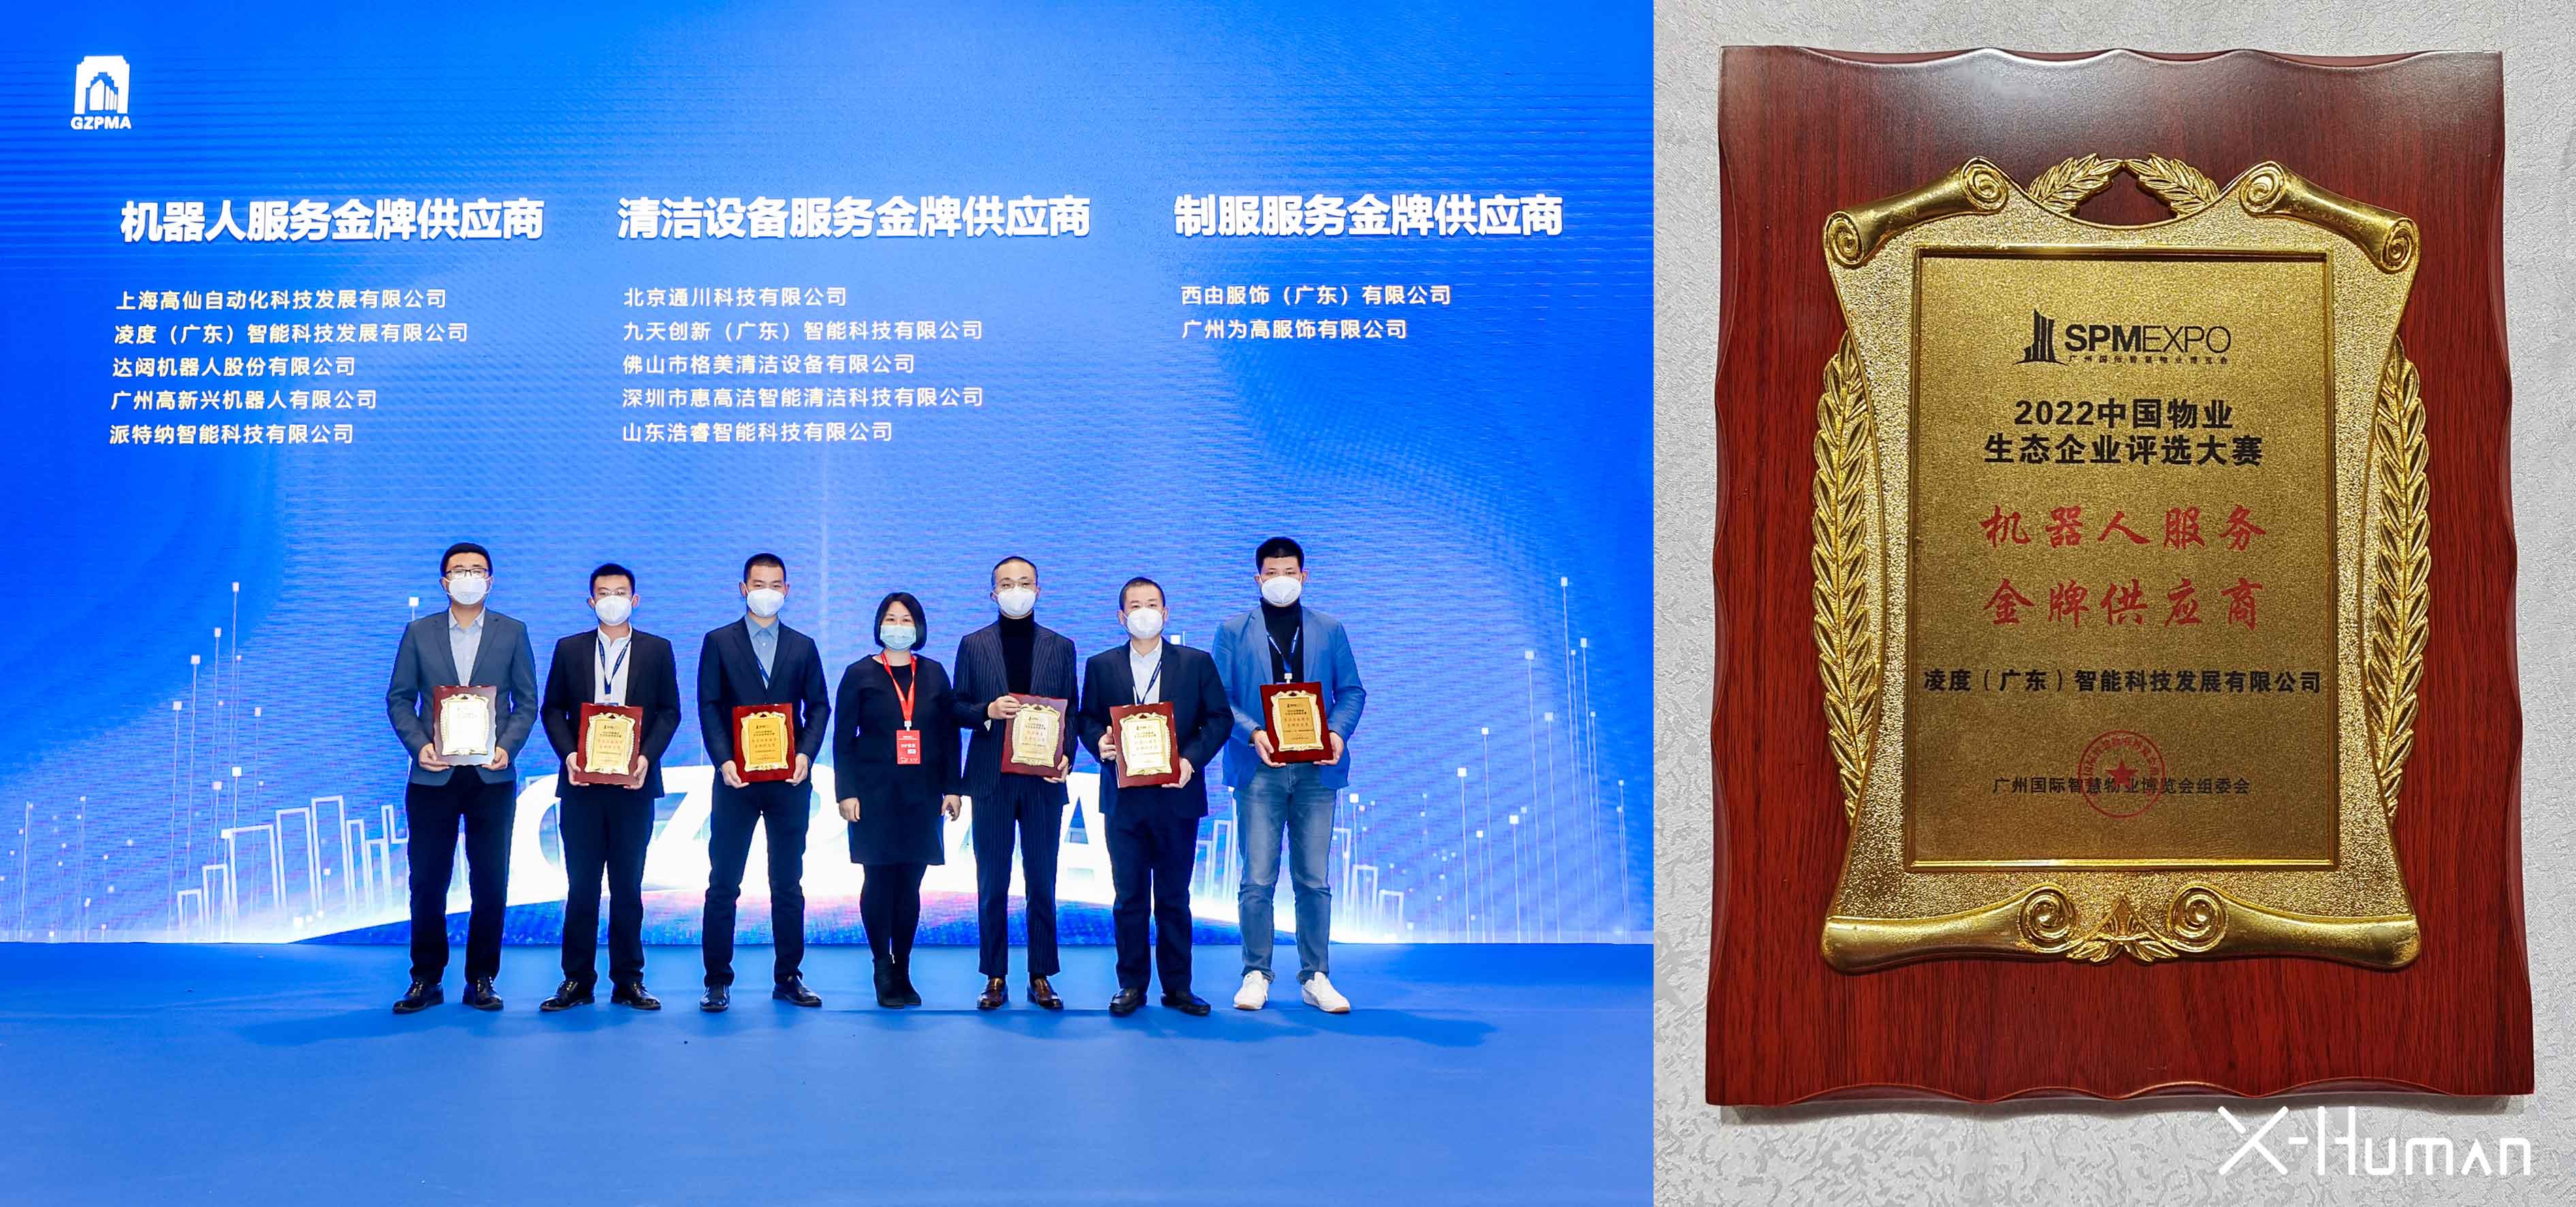 凌度智能荣获2022中国物业生态企业评选大赛“机器人服务金牌供应商”奖